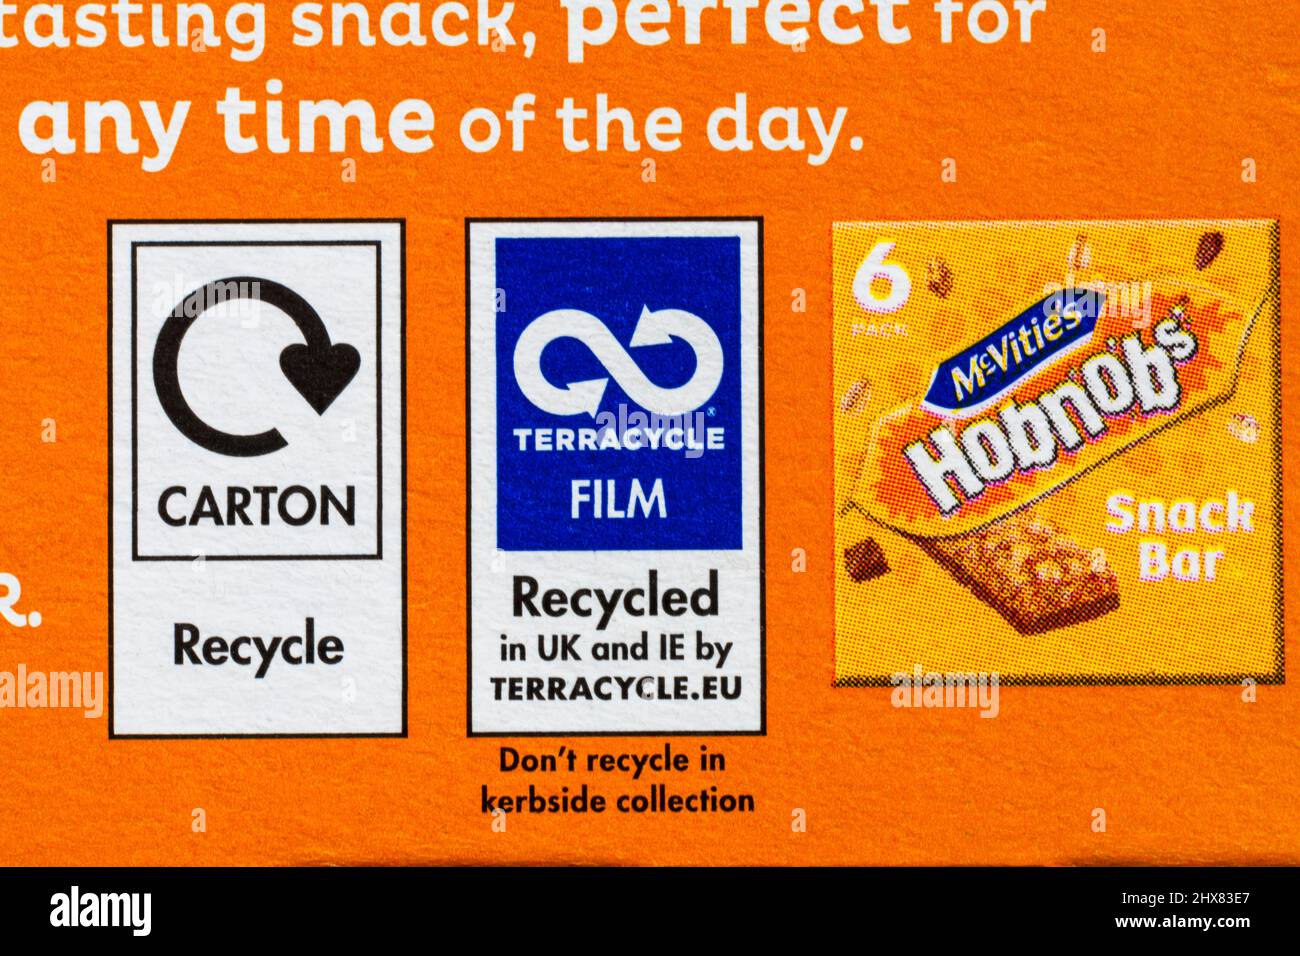 Información de reciclaje Terracicle Film en caja de McVities hobnobs snack bar galletas leche chocolate y Golden Syrup sabor oaty bares Foto de stock